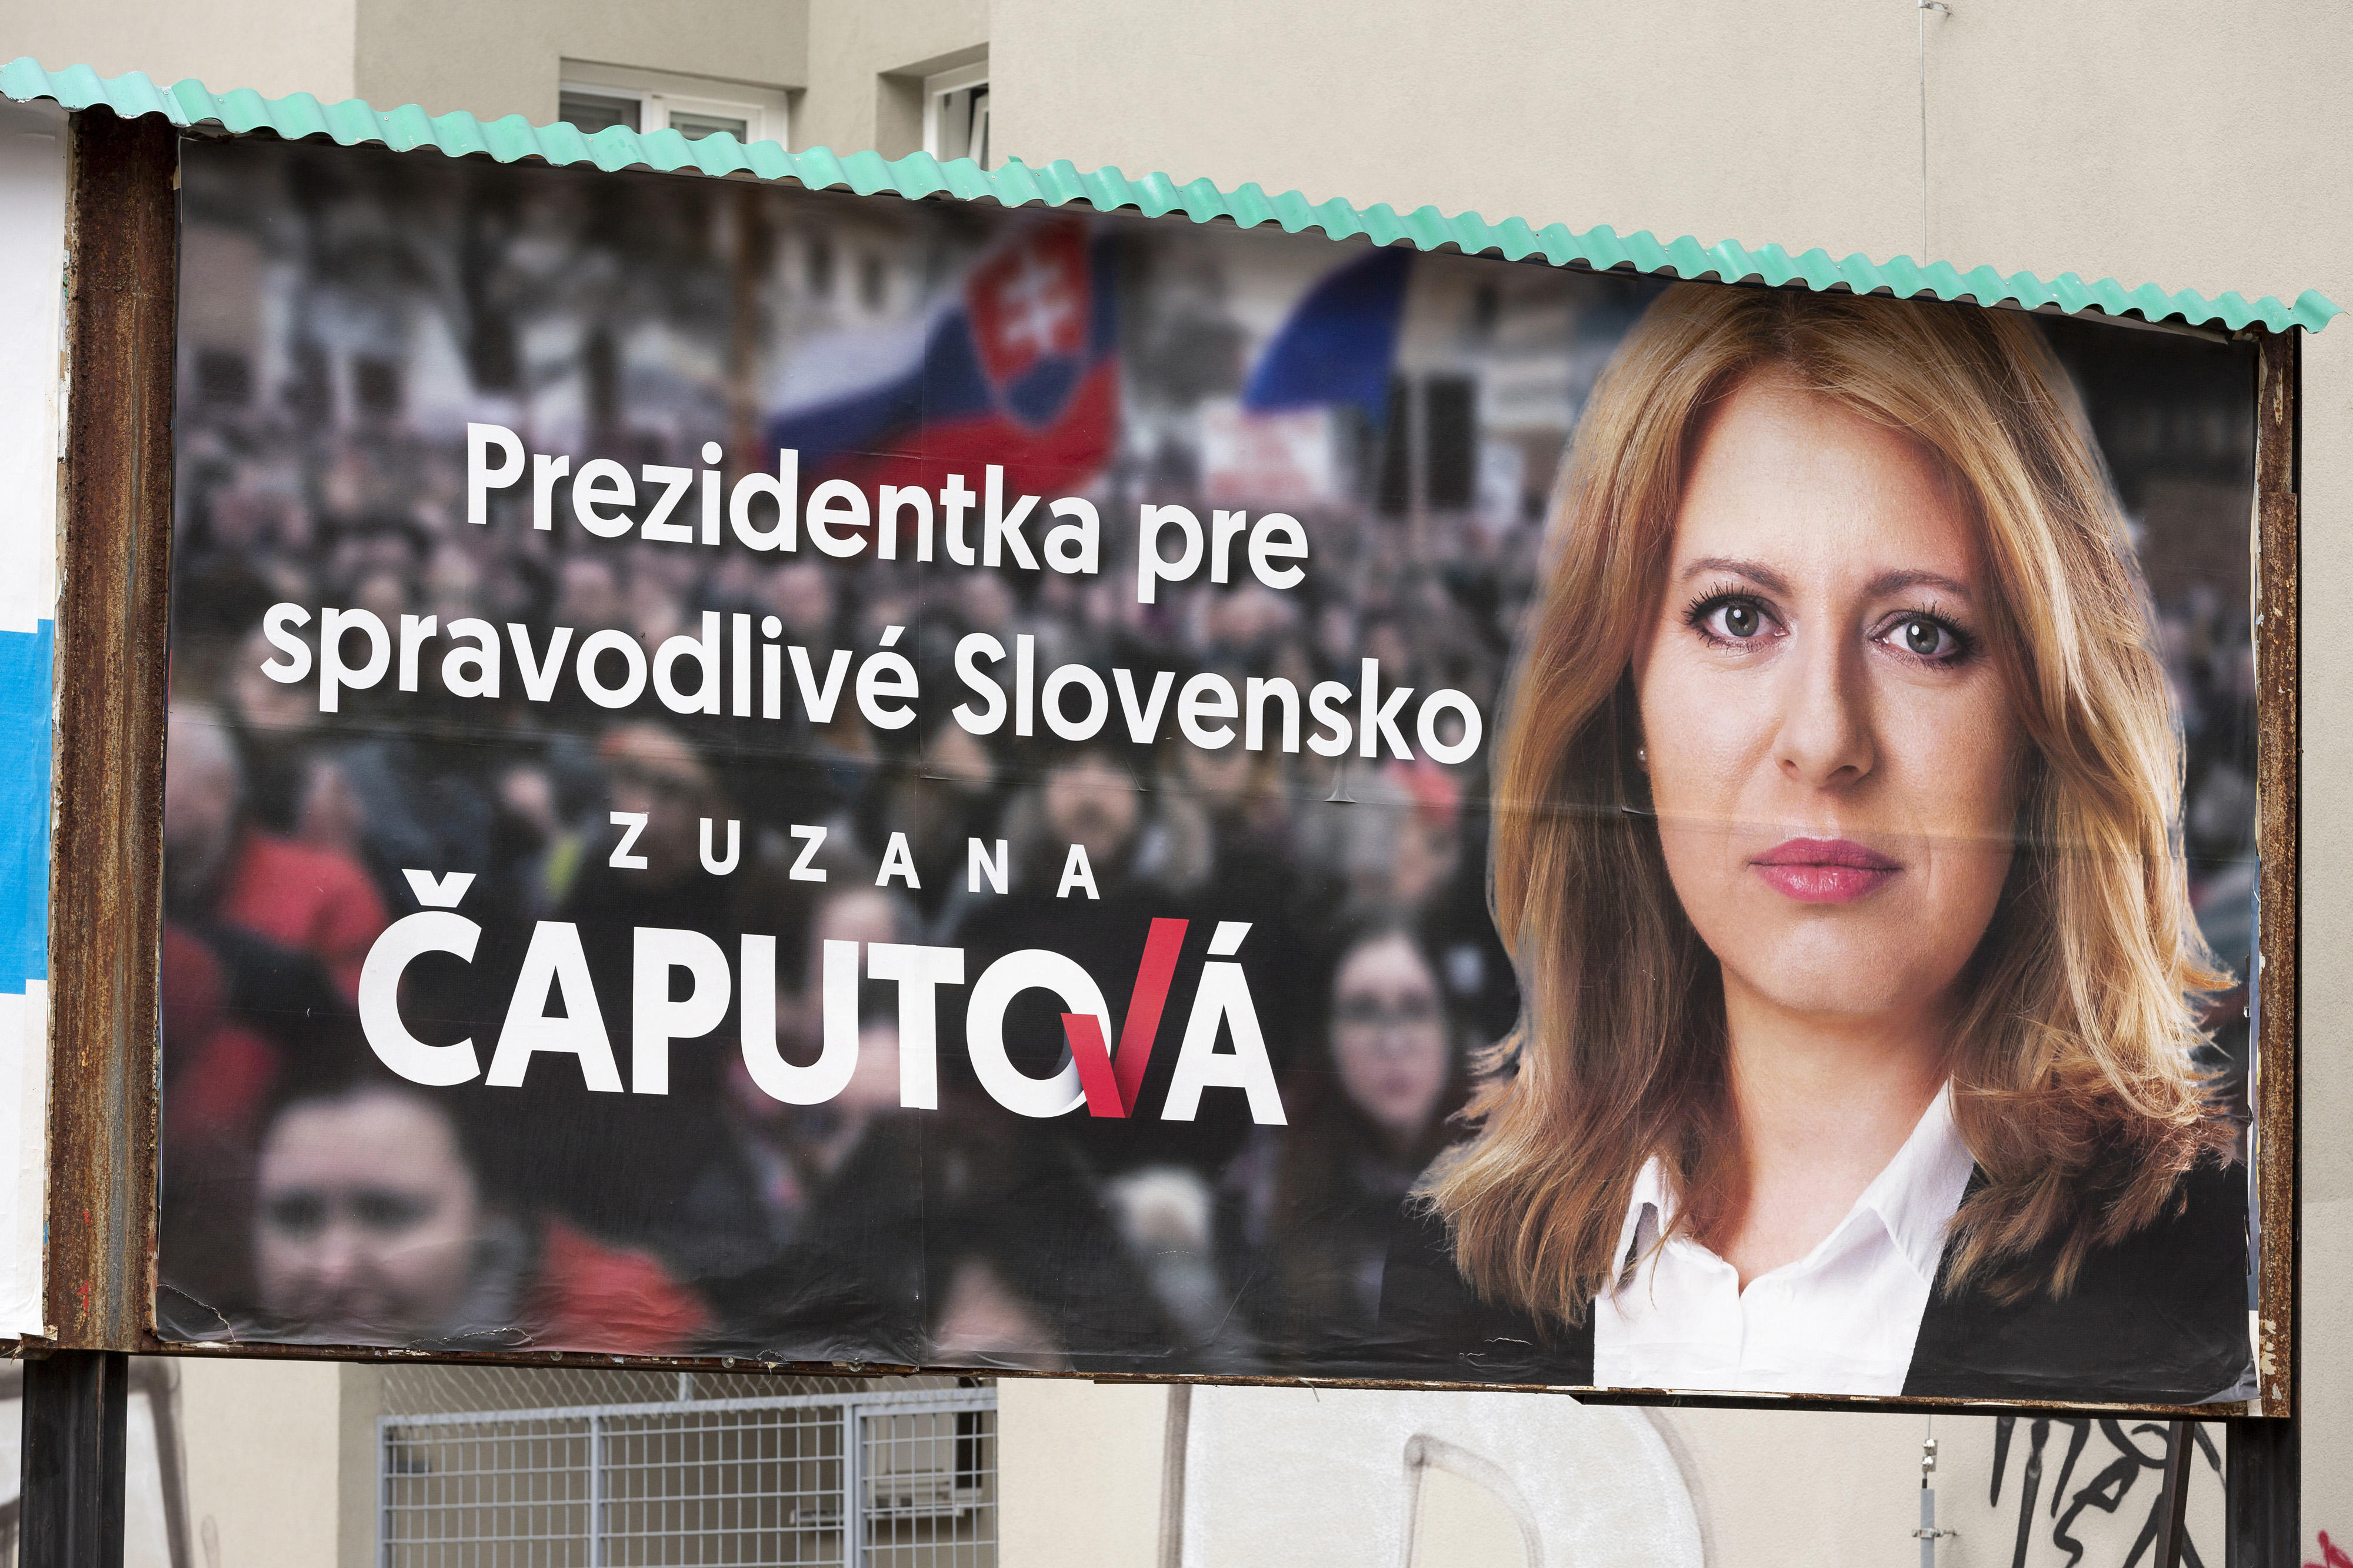 Das Wahlplakat von Zuzana Caputova für die Präsidentsschaftswahlen 2019 Slowakei.